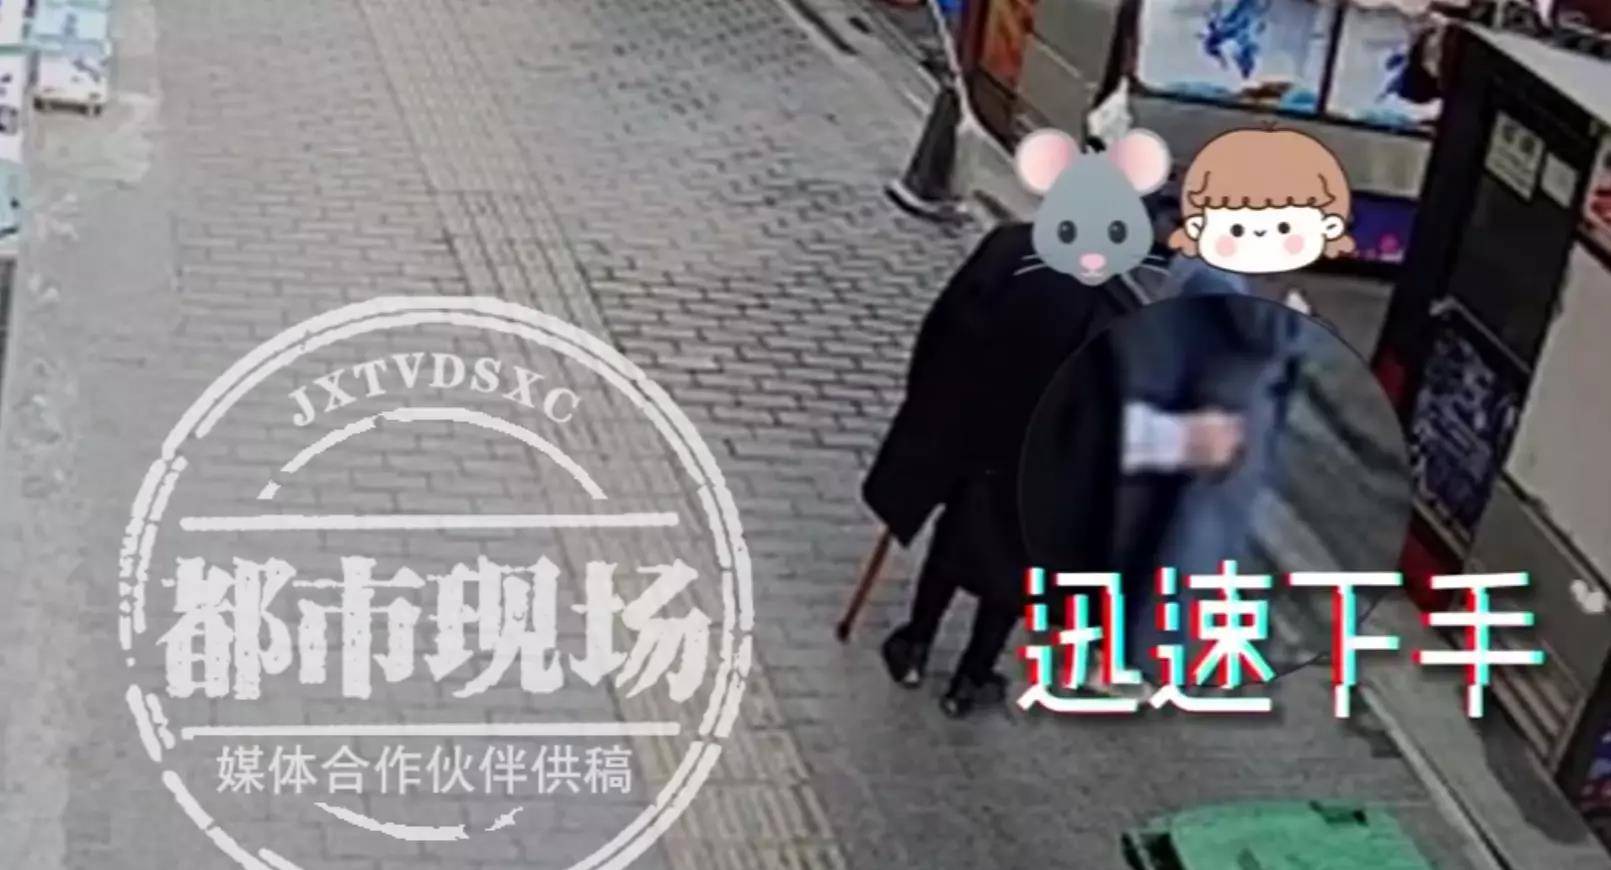 华为手机p9被偷
:女子街边吃零食手机被偷，民警抓获“异装”嫌疑人